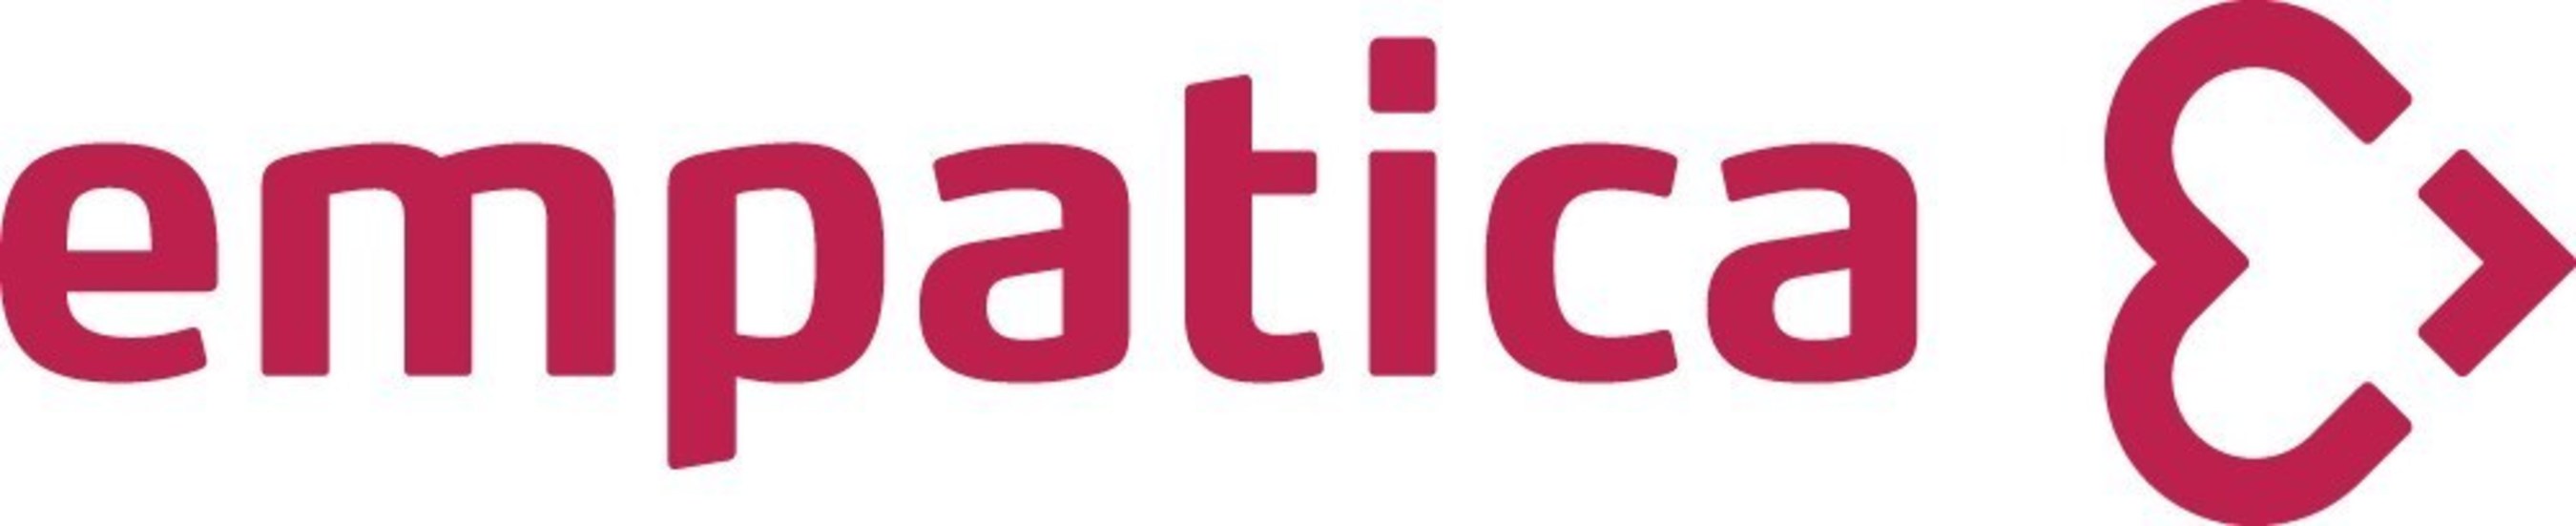 Empatica, Inc. Logo